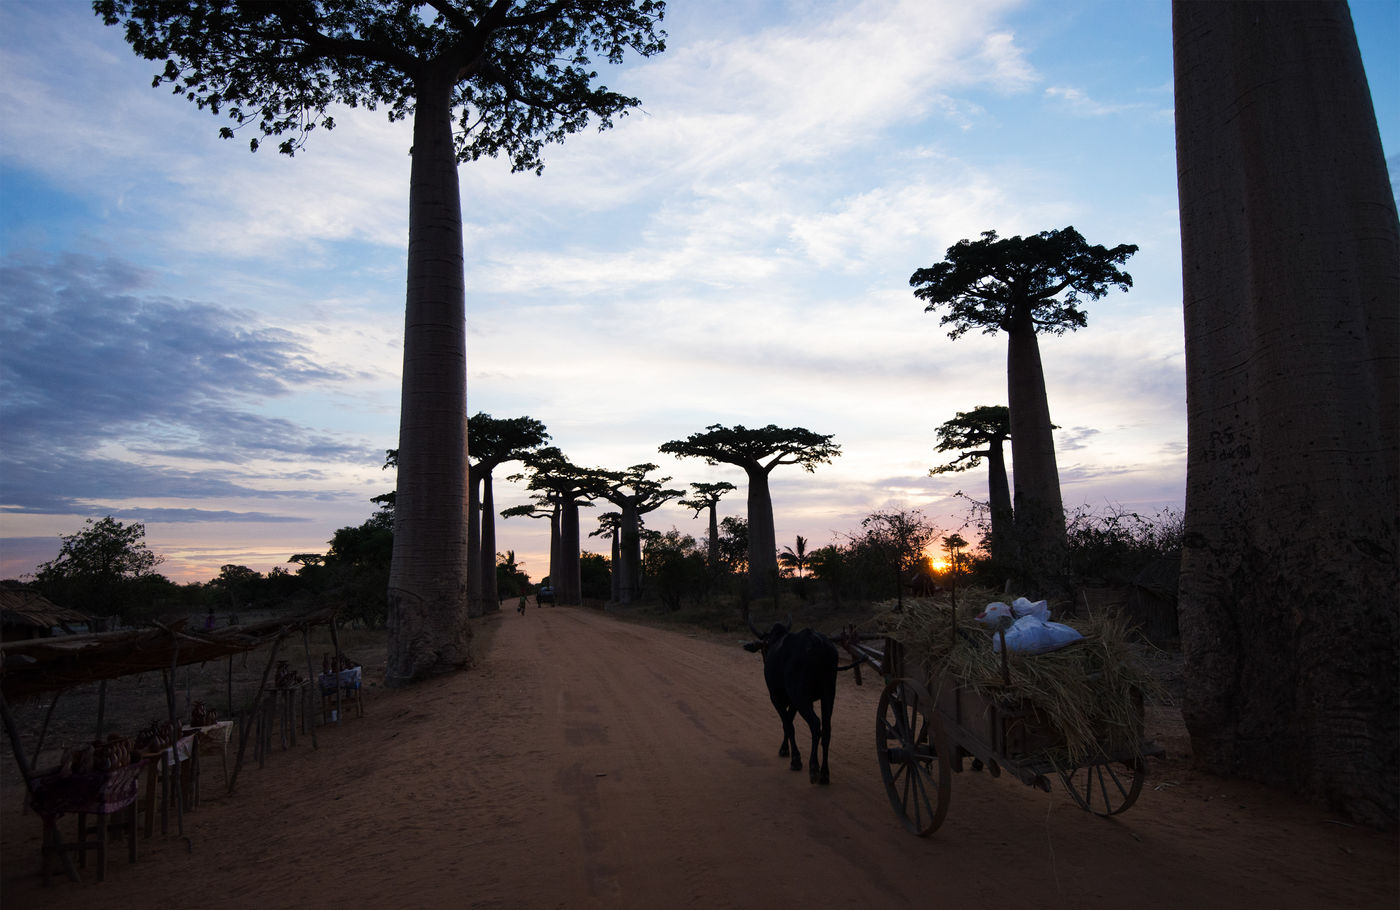 De baobabs liegen er niet om, het is hier droog aan de westzijde van het eiland! © Samuel De Rycke